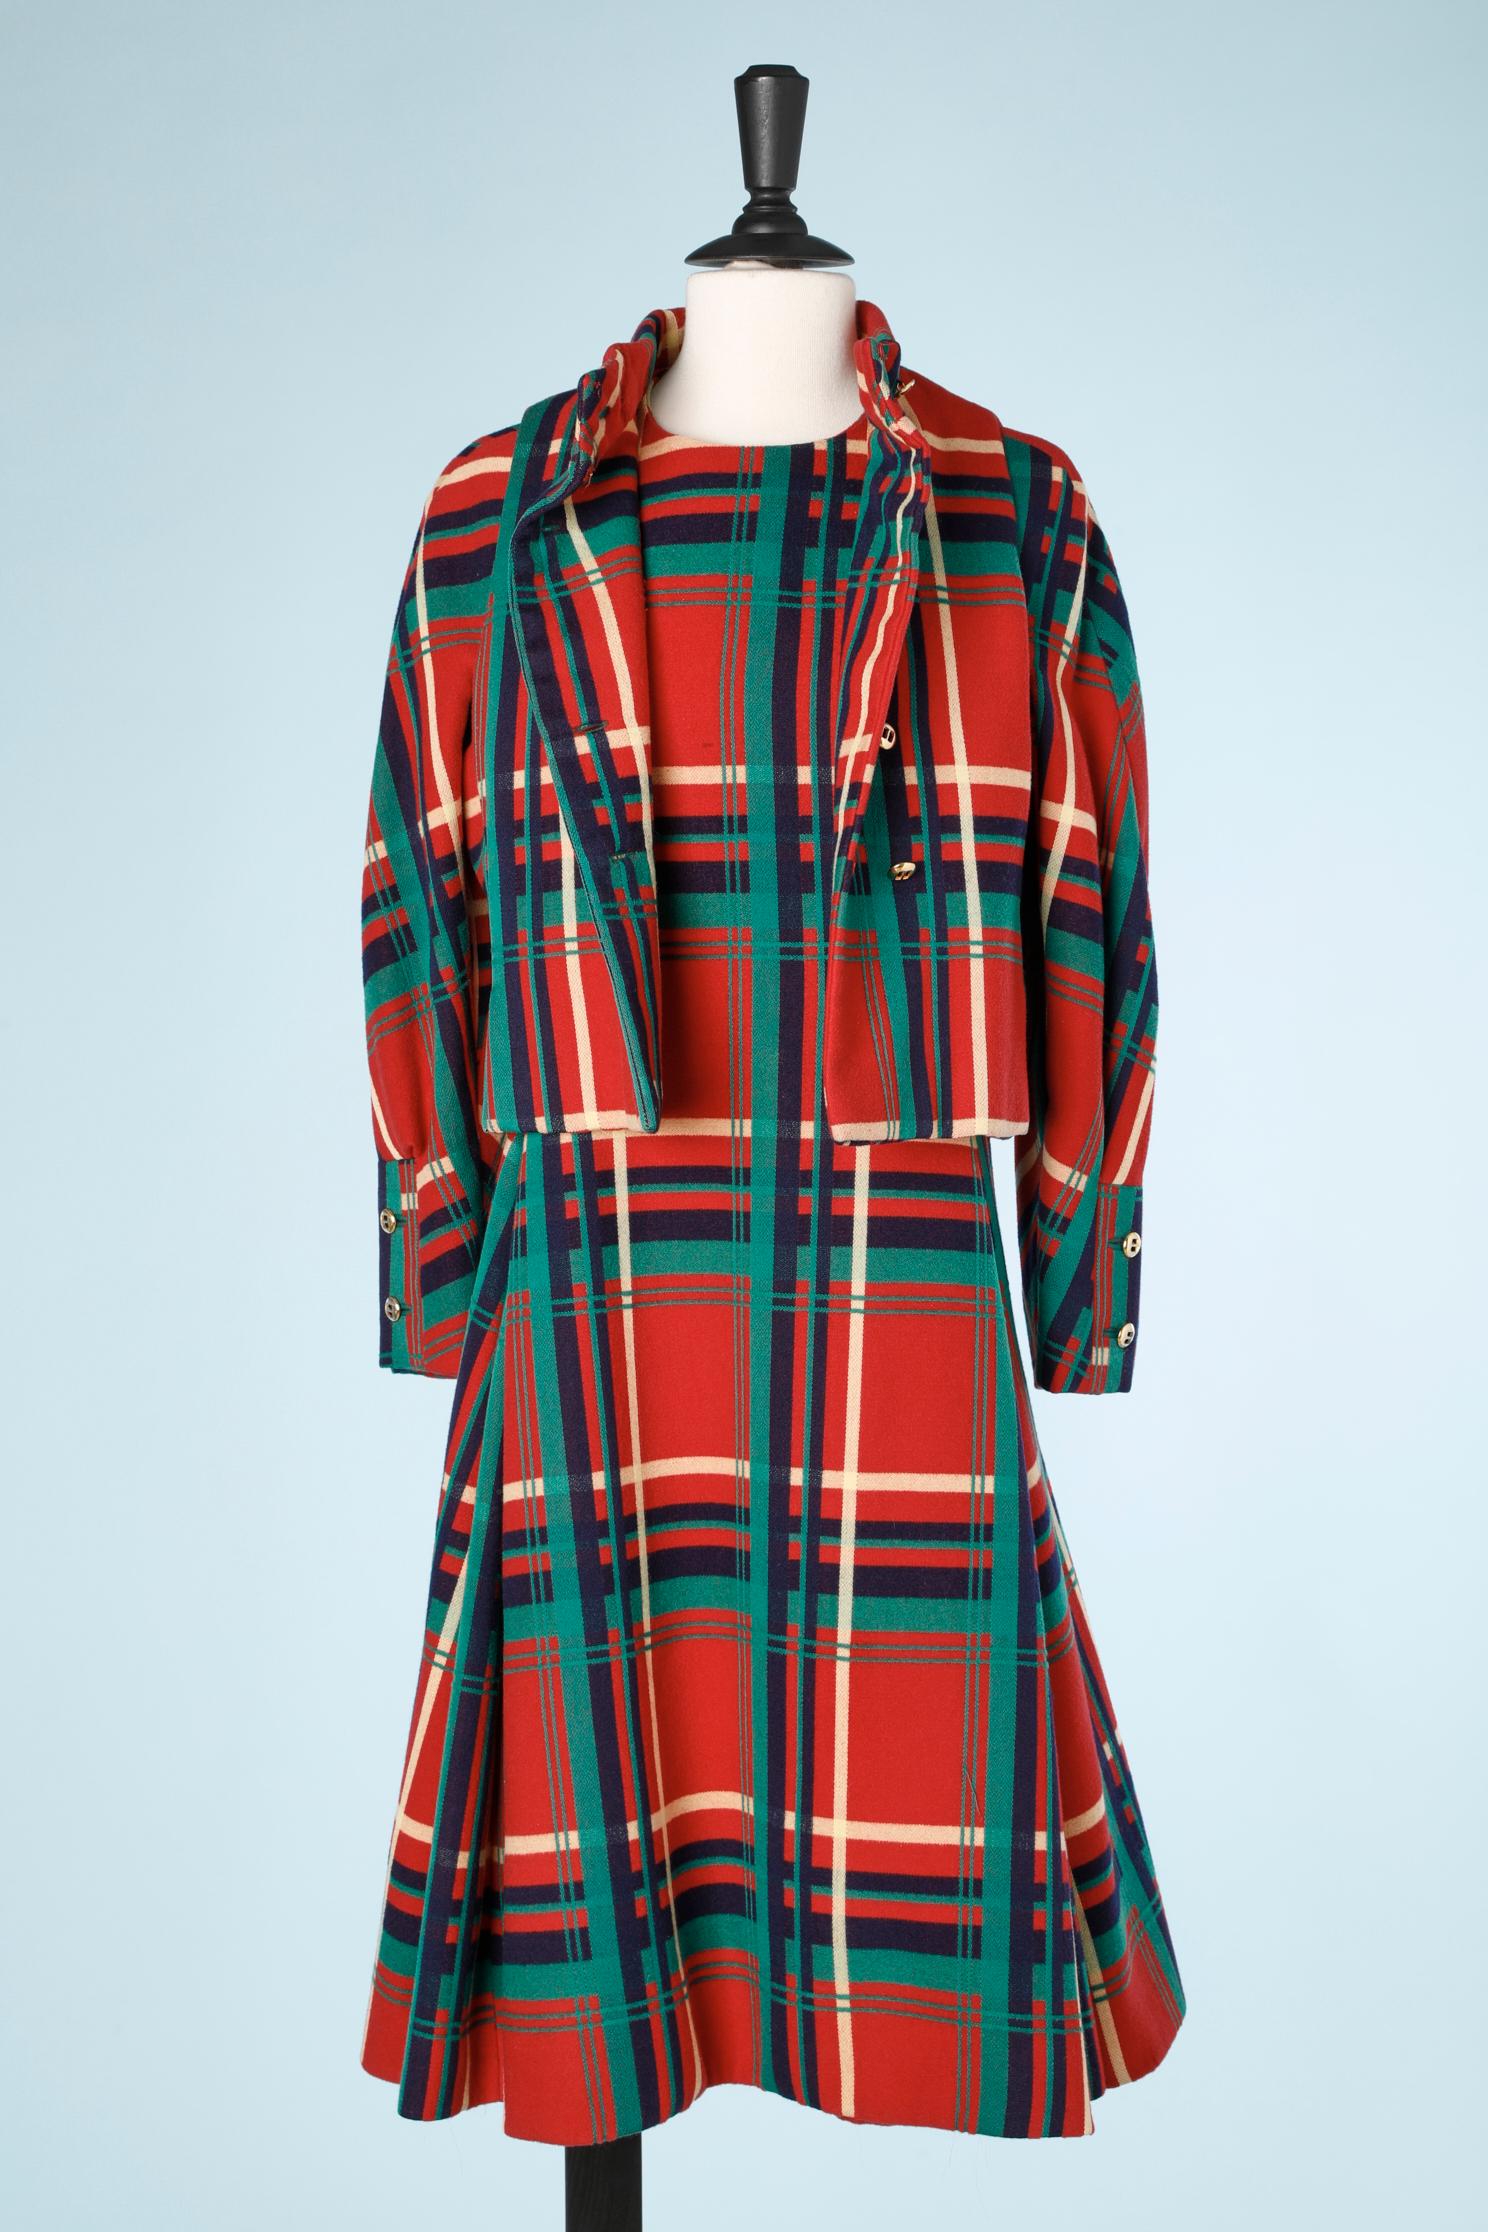 Women's Dress-suit  in wool tartan with 